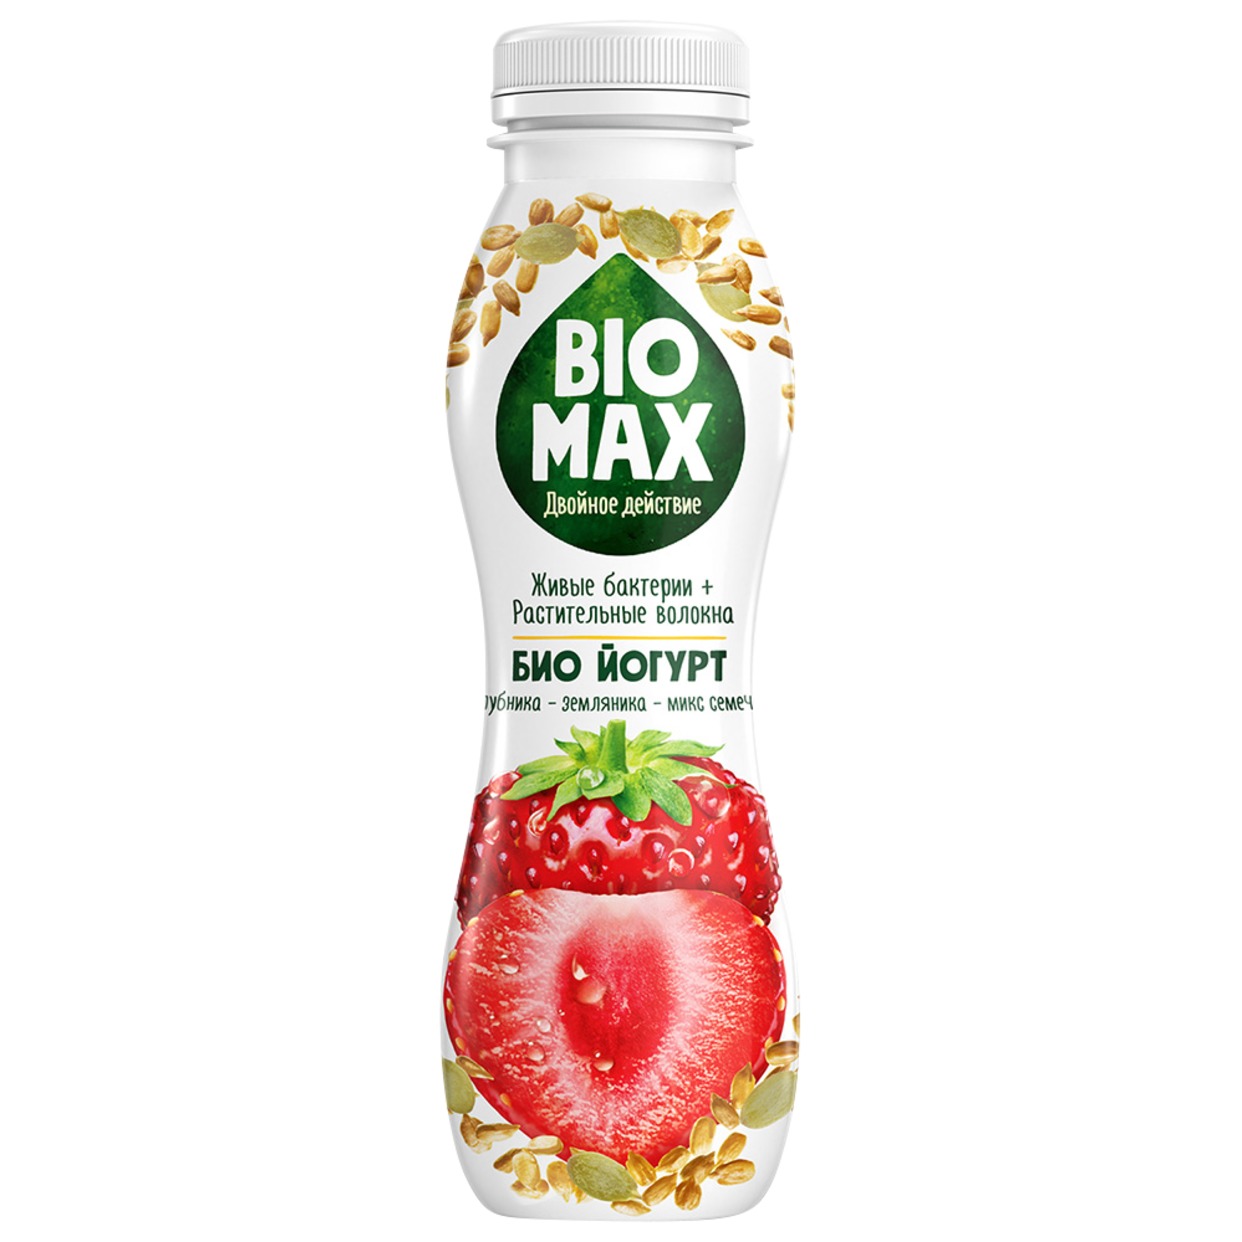 "Bio-Max" биойогурт с наполнителем "Клубника-земляника-микс семечек" обогащенный бифидобактериями и пребиотиком 1.9 % 270г по акции в Пятерочке